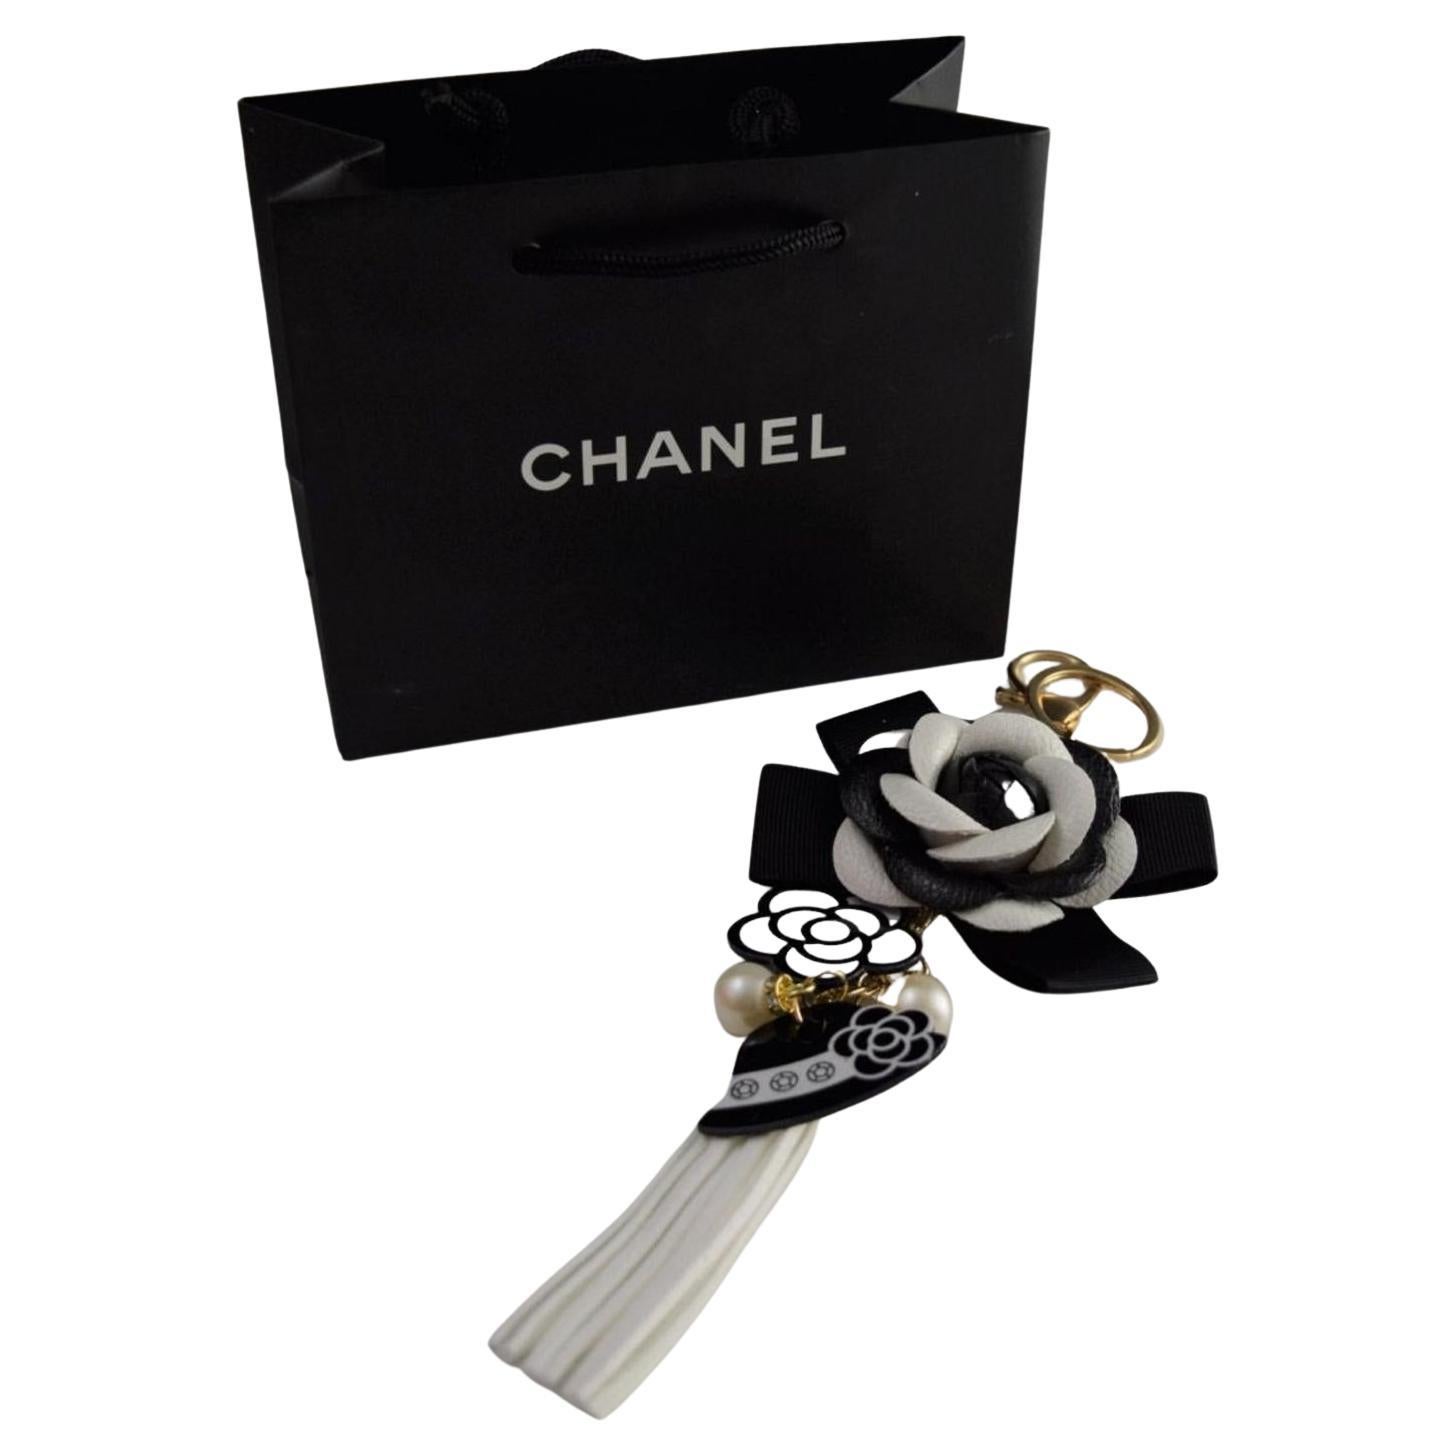 Chanel Vip Bag - 3 For Sale on 1stDibs  chanel vip shell bag, chanel vip  bag for sale, chanel vip duffle bag